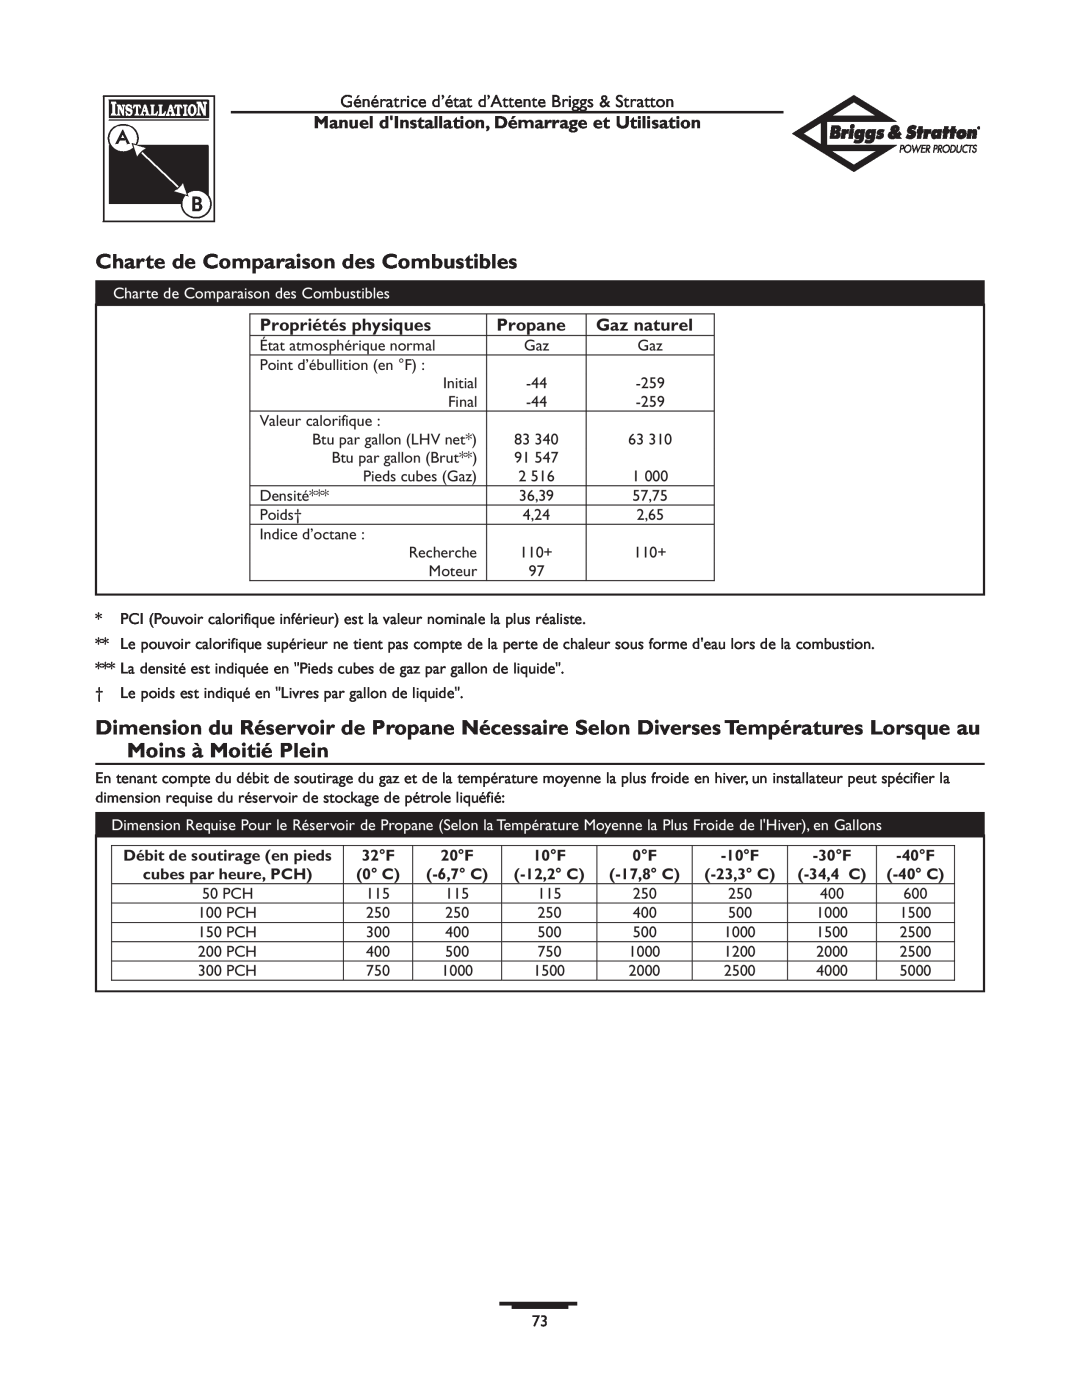 Briggs & Stratton 01897-0 Charte de Comparaison des Combustibles, Propriétés physiques, Gaz naturel, Propane, 6,7 C, 40 C 